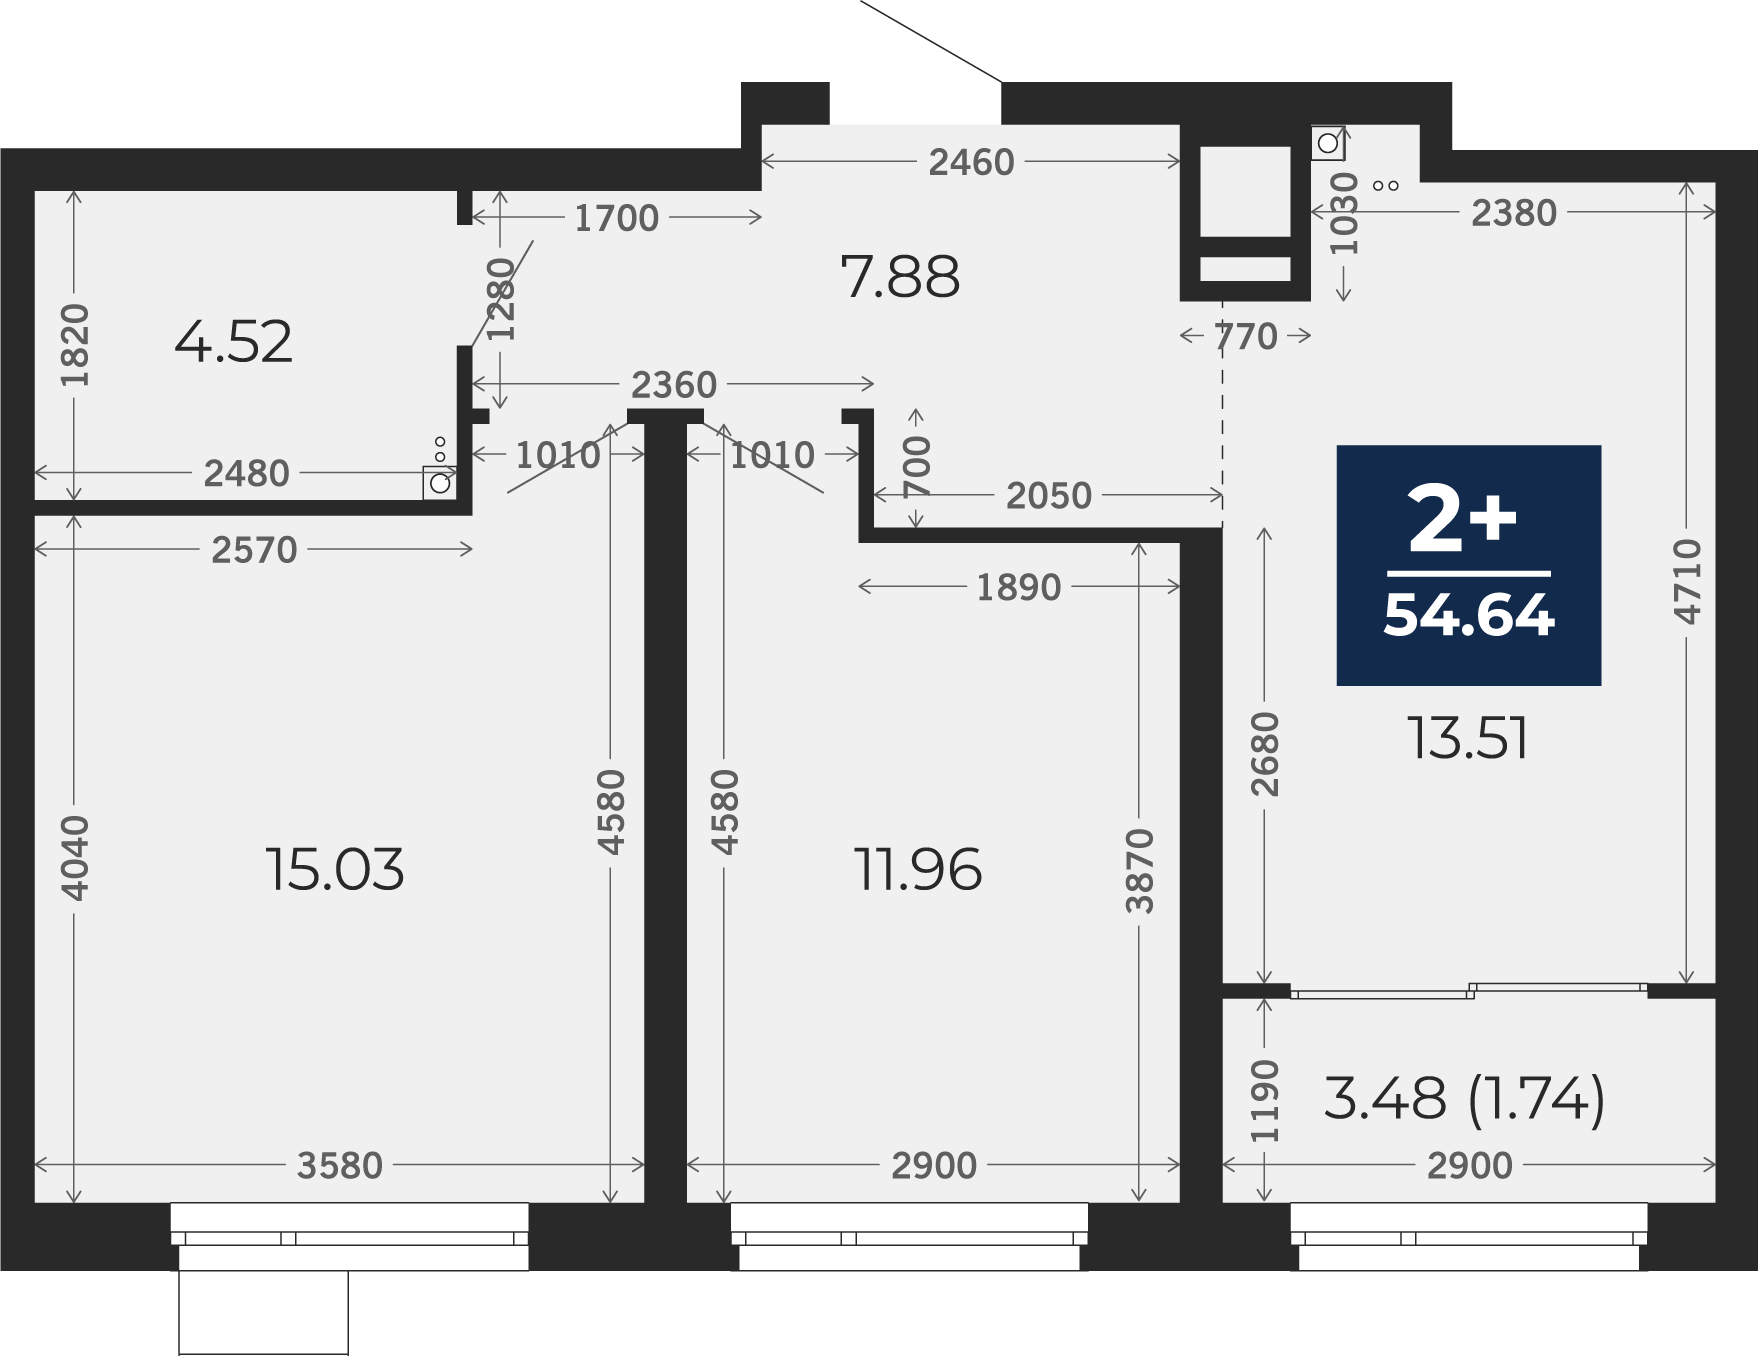 Квартира № 277, 2-комнатная, 54.64 кв. м, 17 этаж